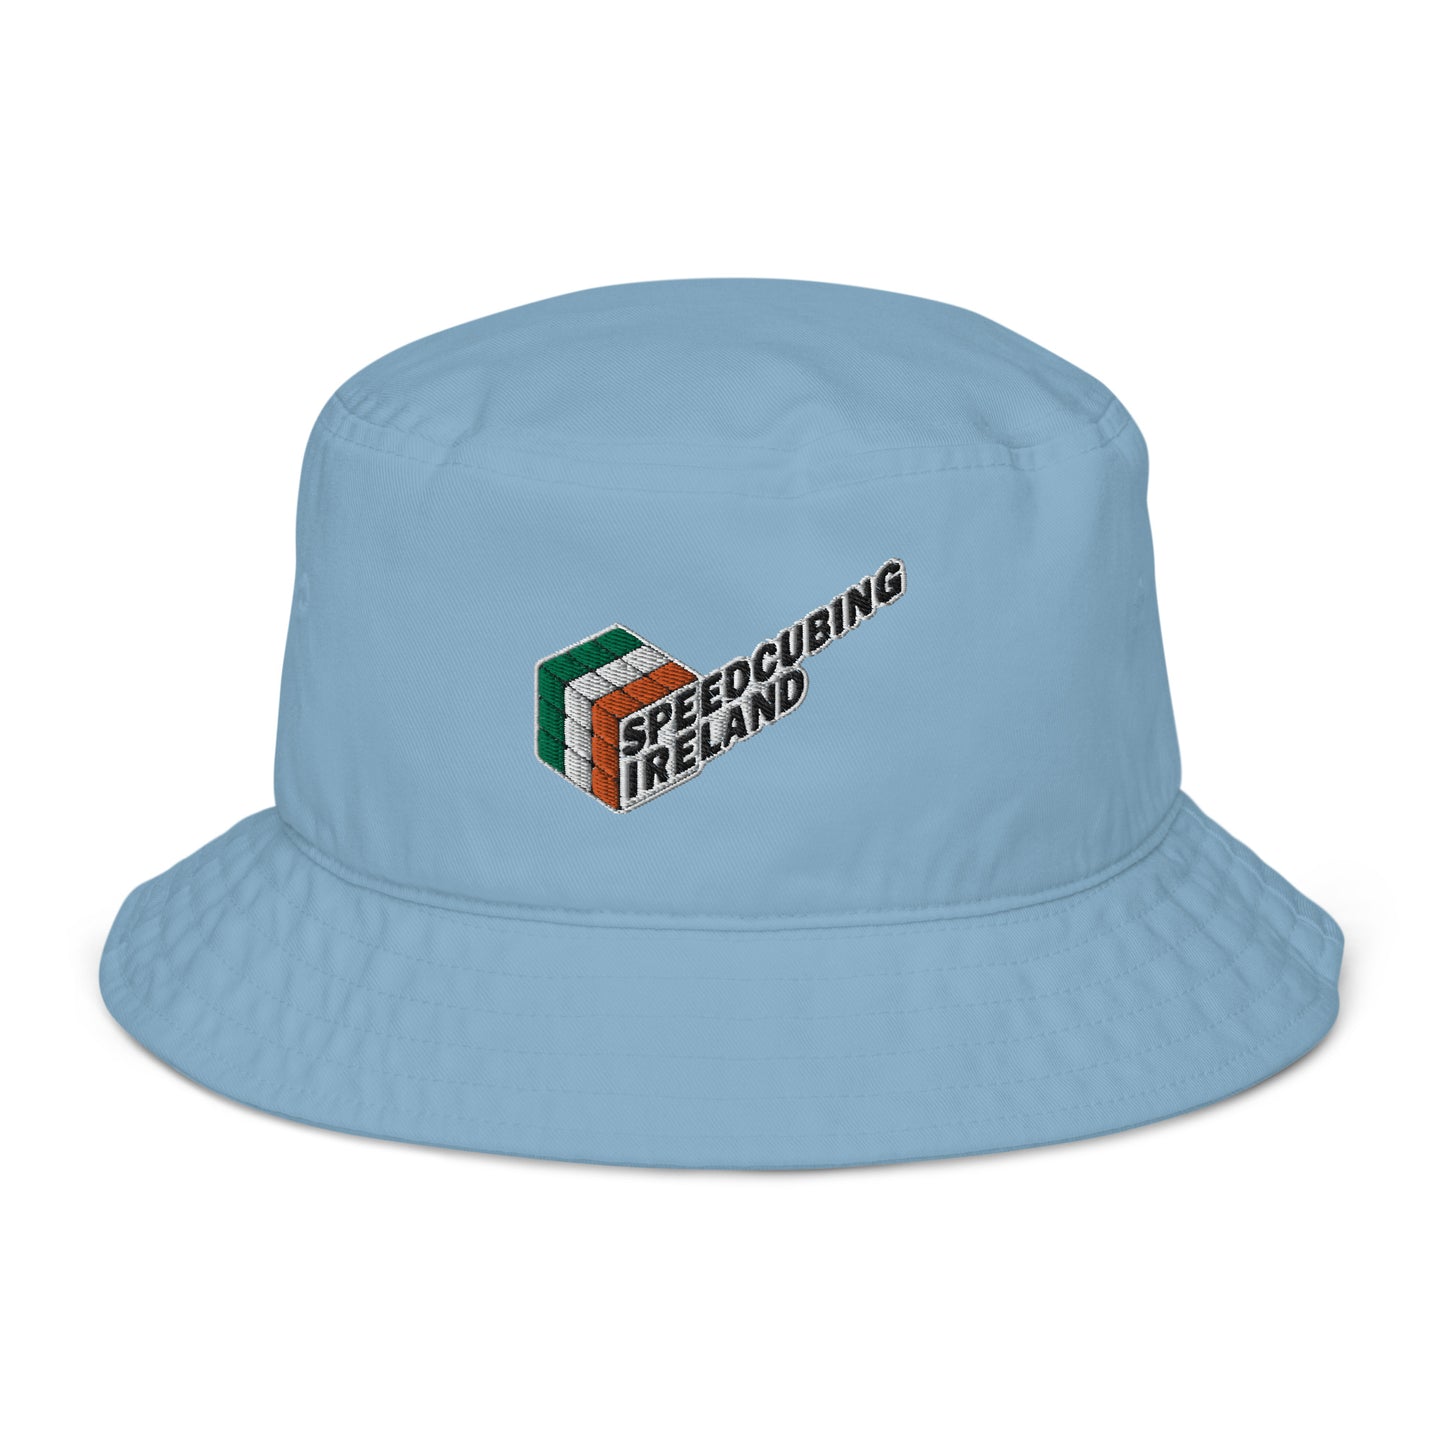 Embroidered Bucket Hat | Speedcubing Ireland